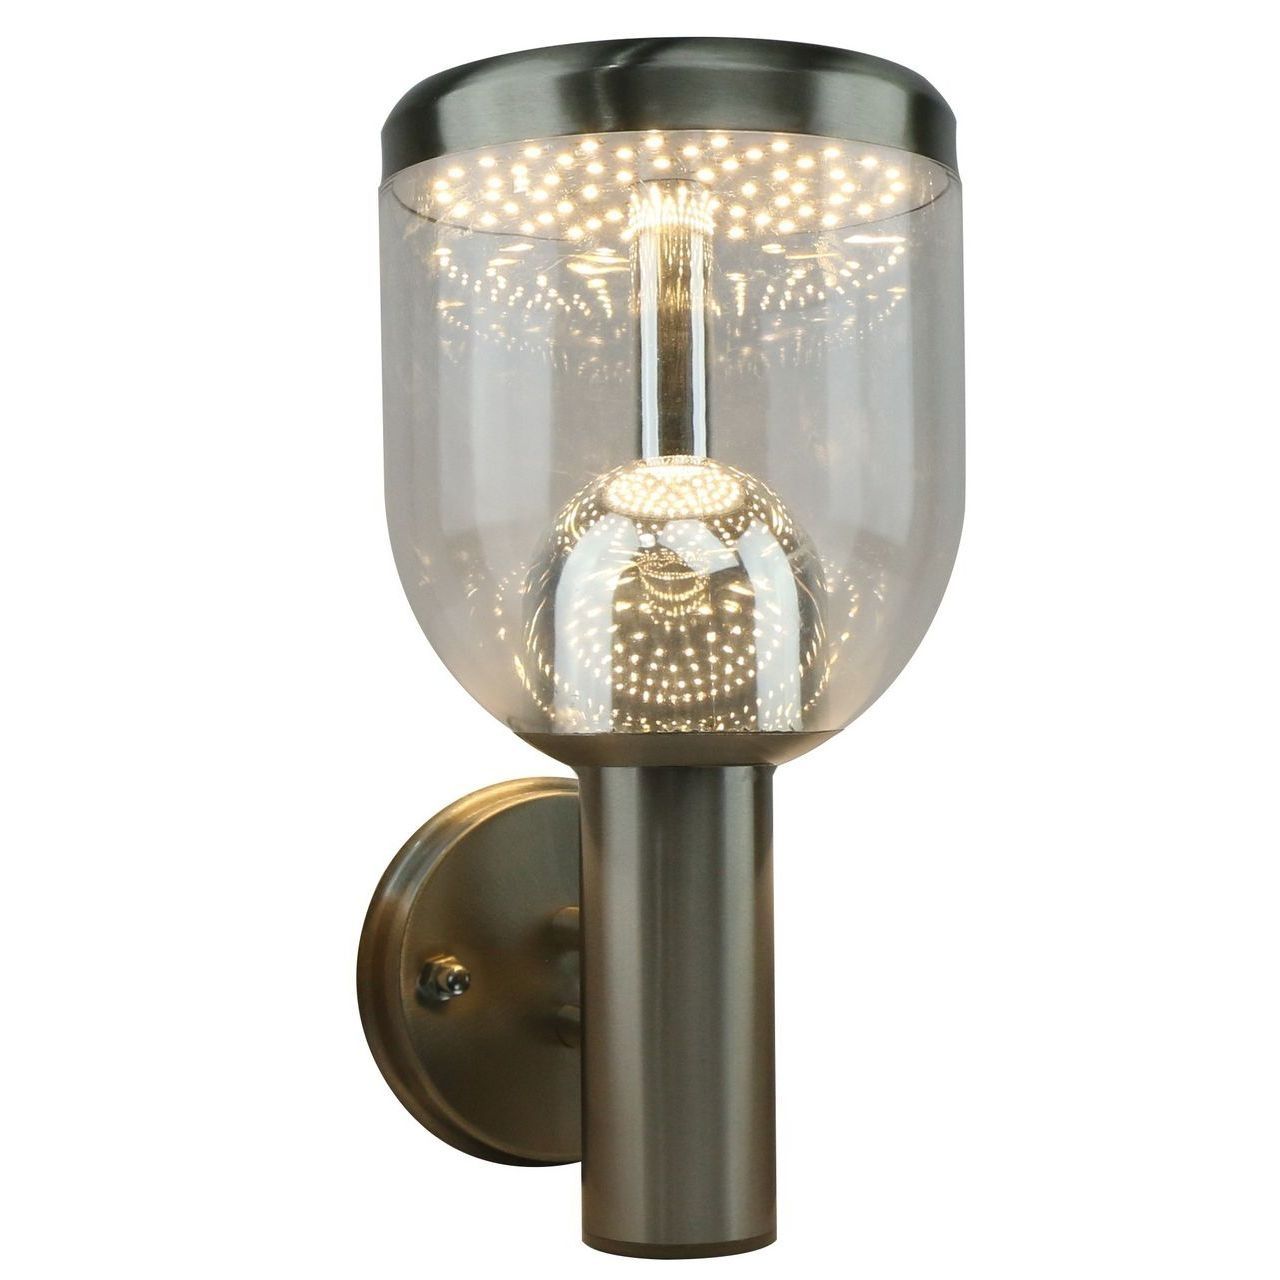 Уличный настенный светодиодный светильник Arte Lamp Inchino A8163AL-1SS, серебро